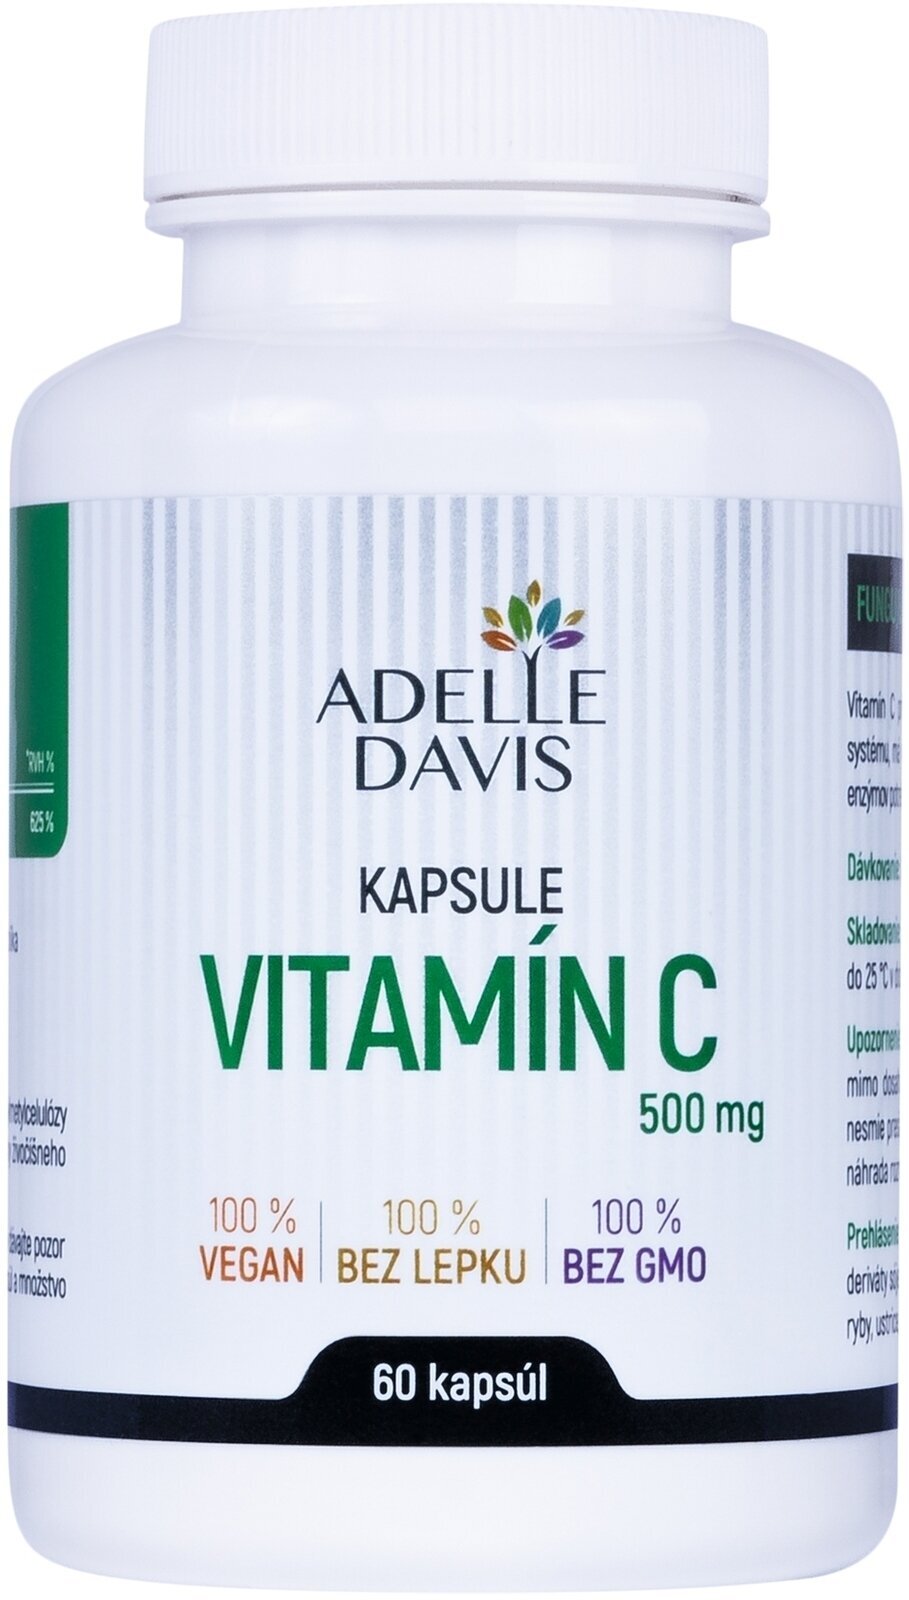 Vitamin C Adelle Davis Vitamin C Vitamin C